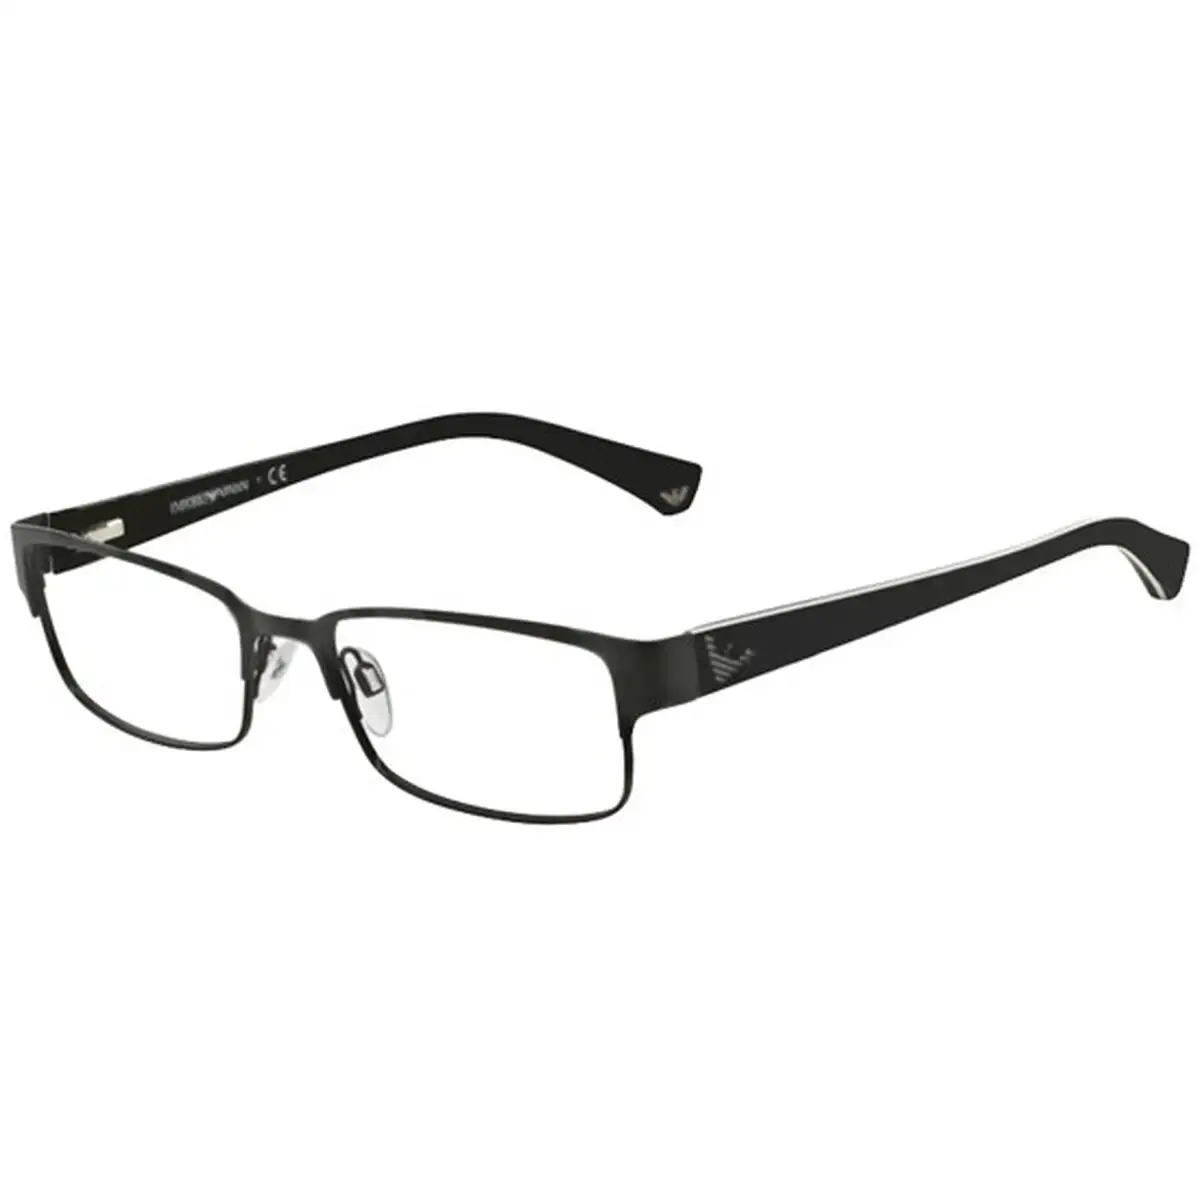 Monture de lunettes homme emporio armani ea 1036_3160. DIAYTAR SENEGAL - Votre Destination pour un Shopping Réfléchi. Découvrez notre gamme variée et choisissez des produits qui correspondent à vos valeurs et à votre style de vie.